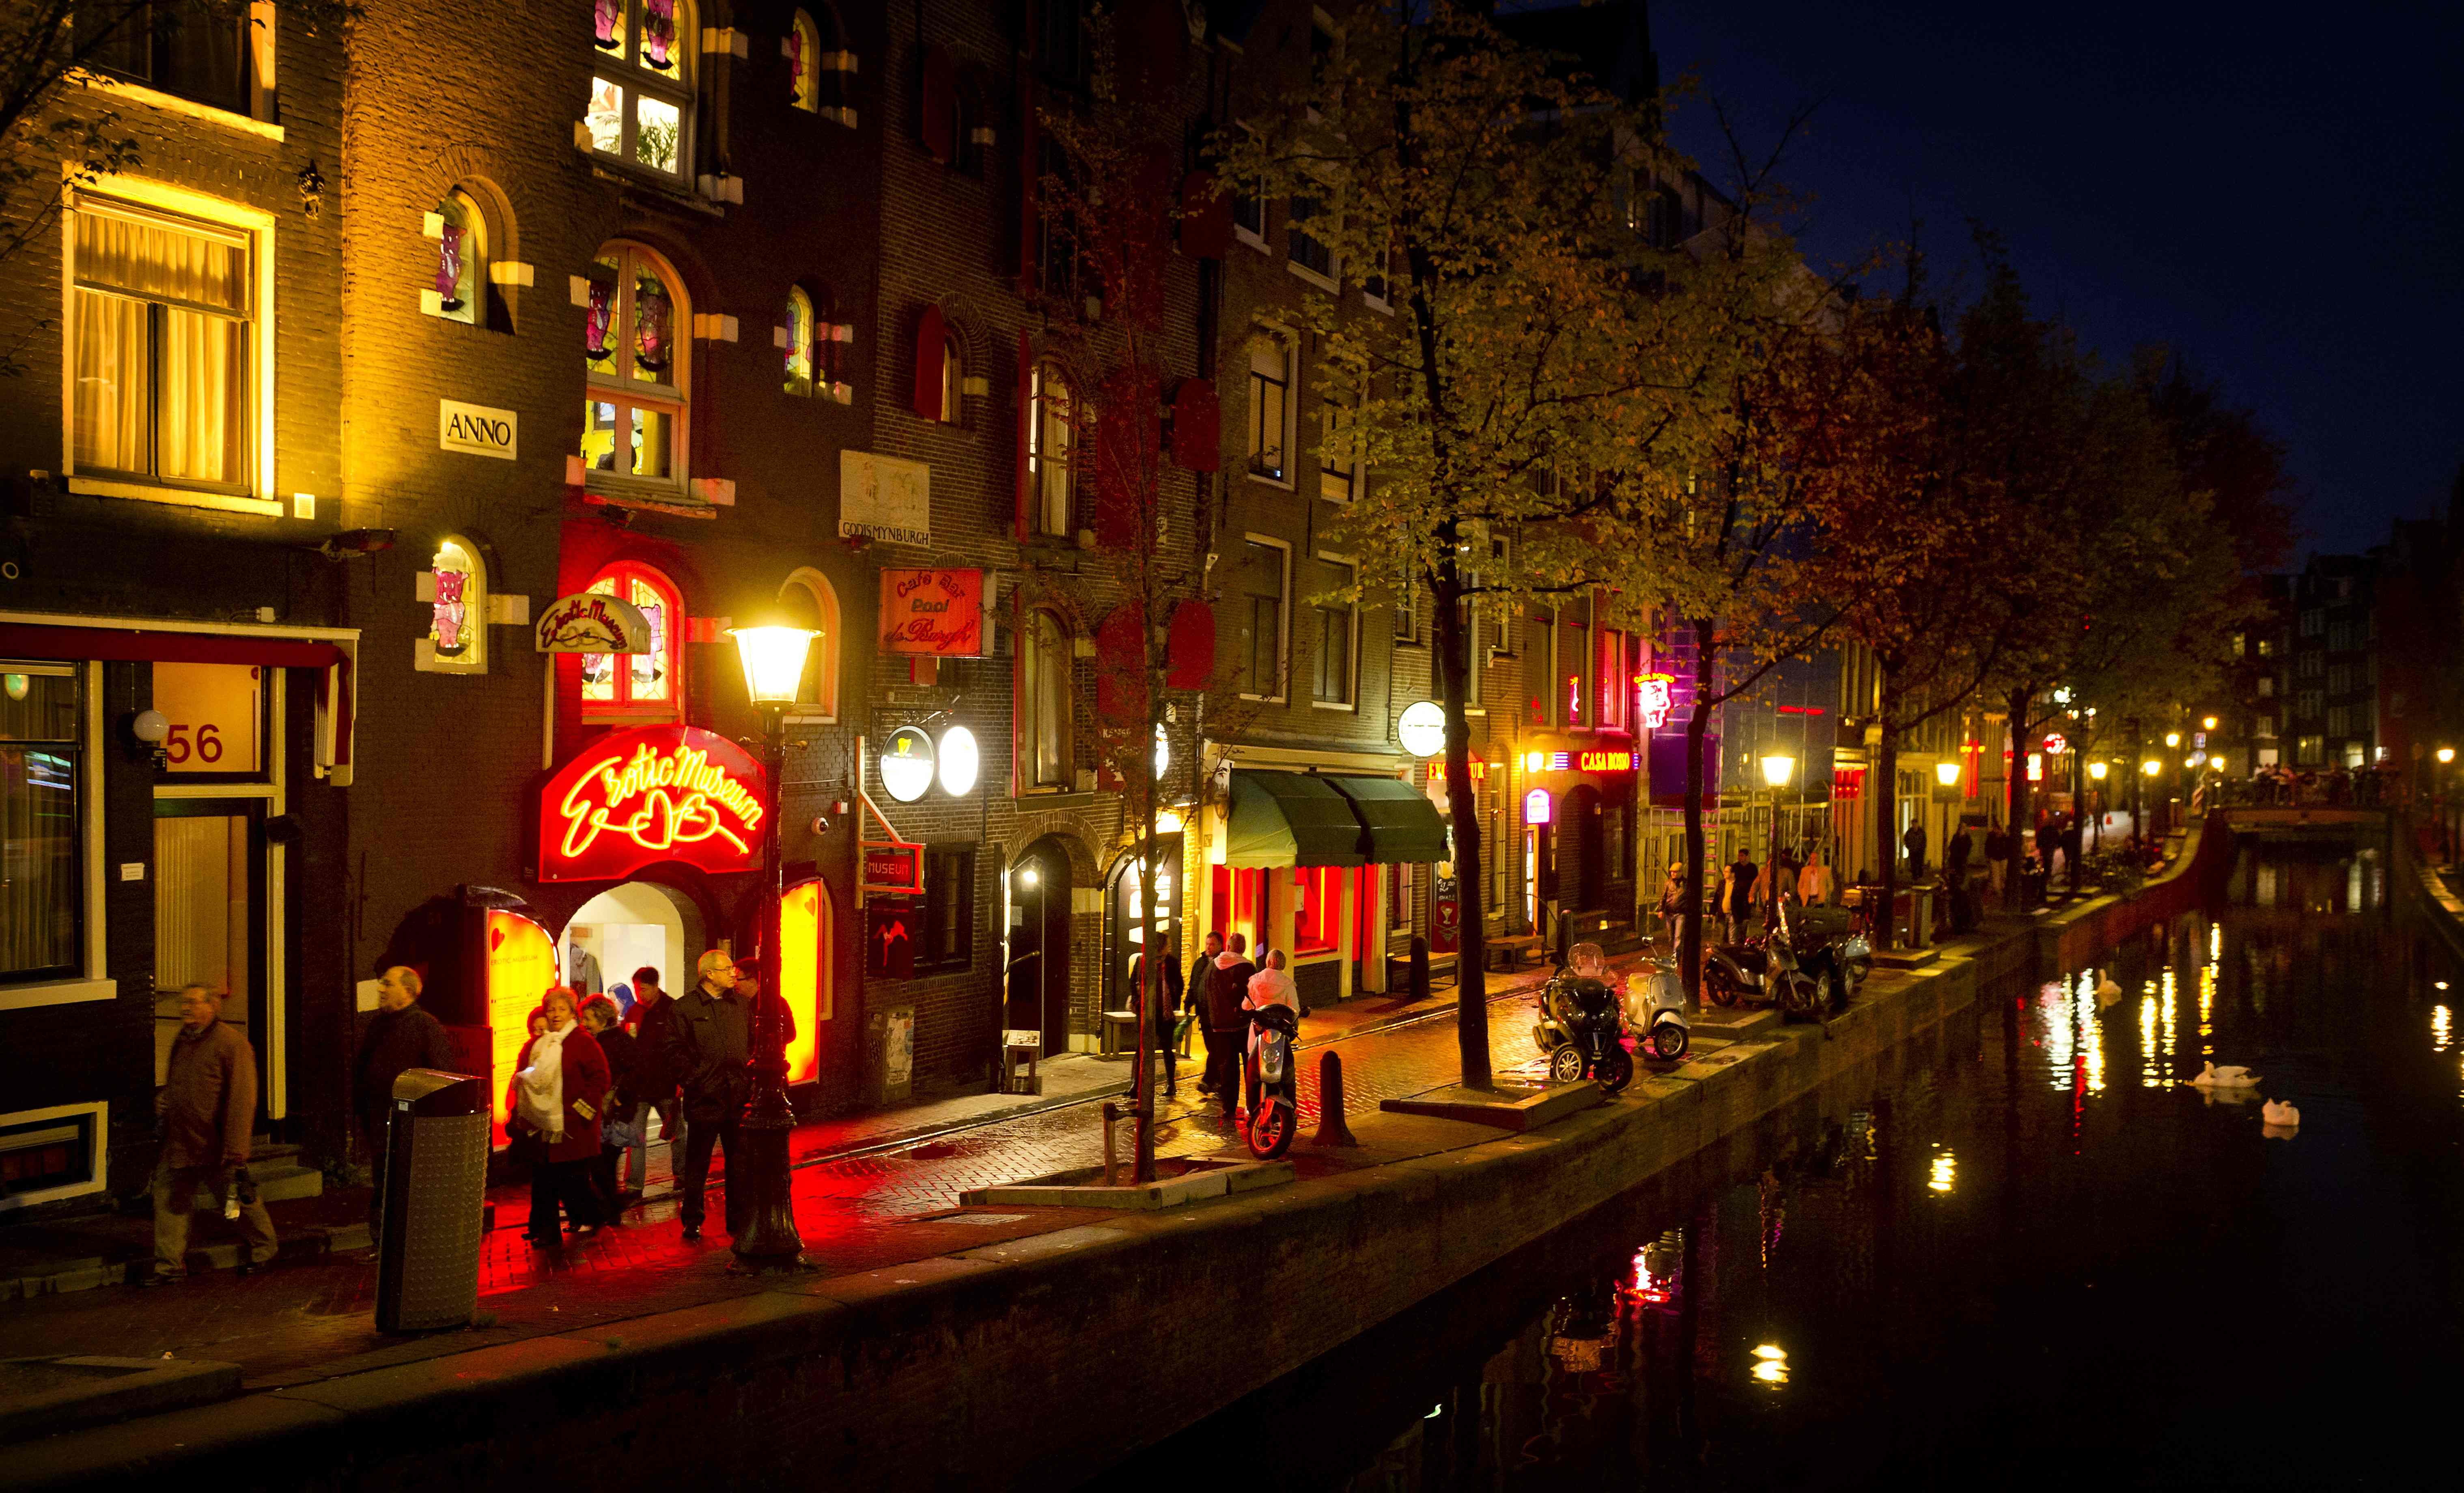 Prostitutas de Ámsterdam protestan contra una ley "que las pone en peligro"